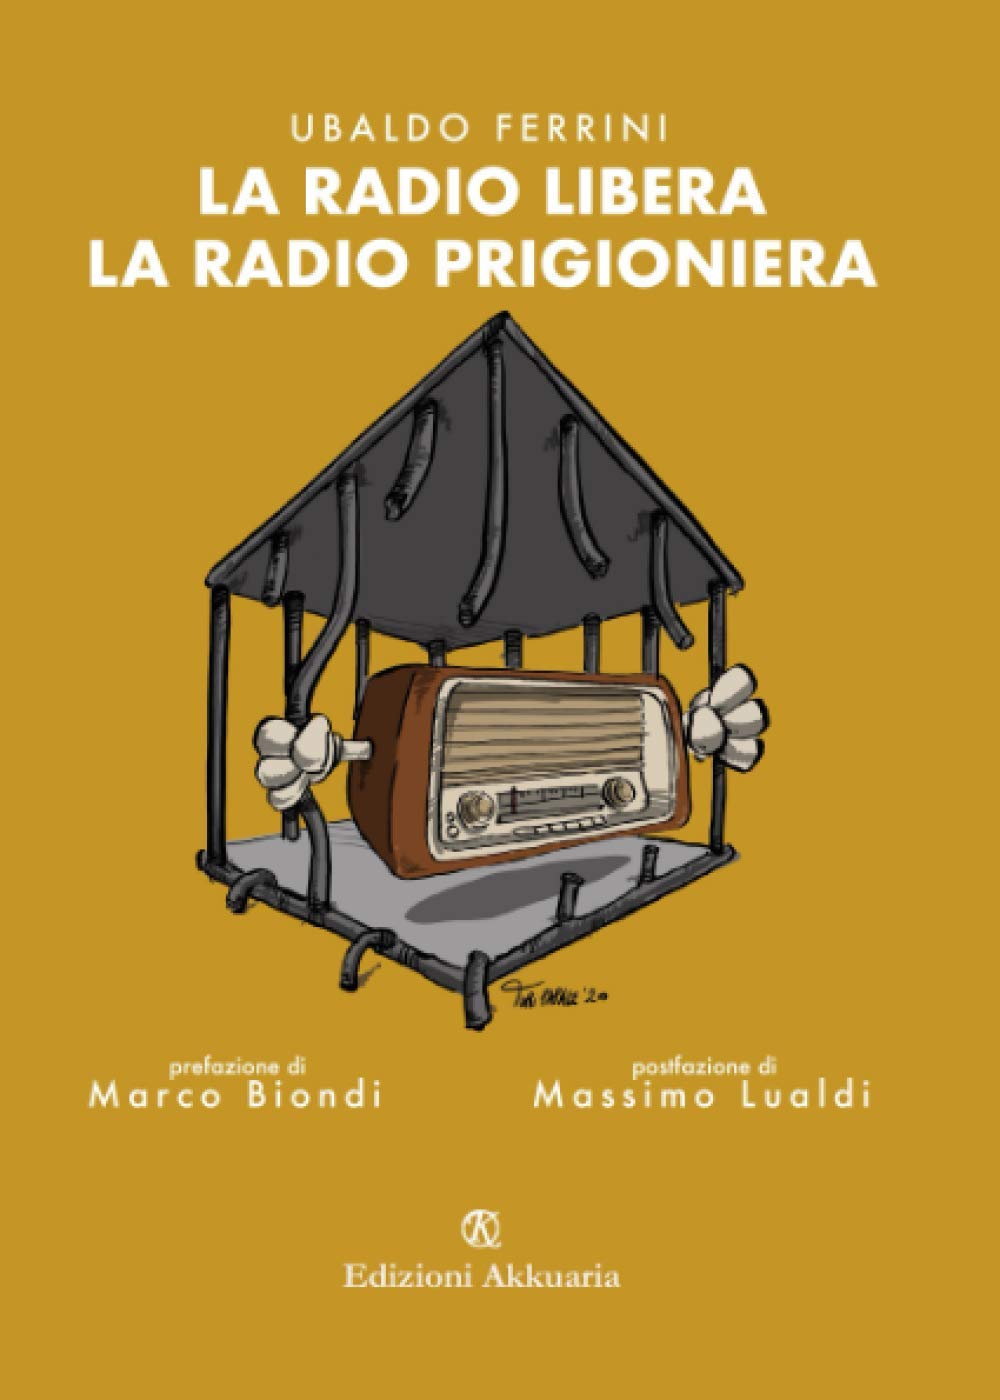 Libri, Ubaldo Ferrini racconta “La radio libera. La radio prigioniera”